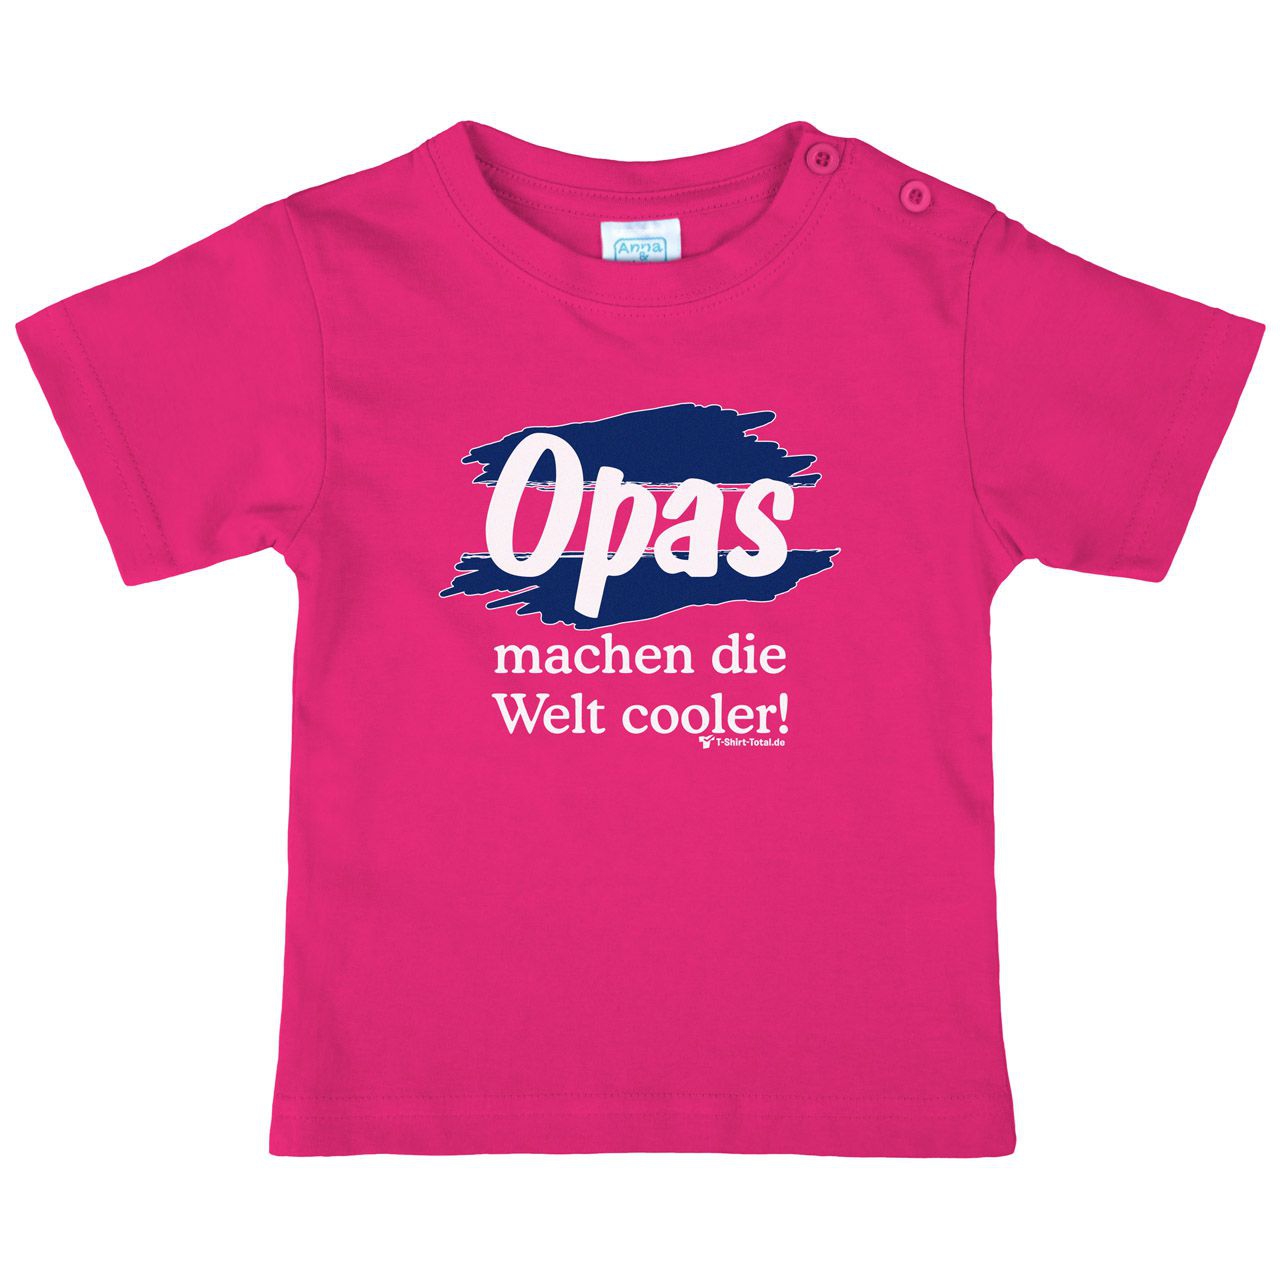 Welt cooler Opa Kinder T-Shirt pink 92